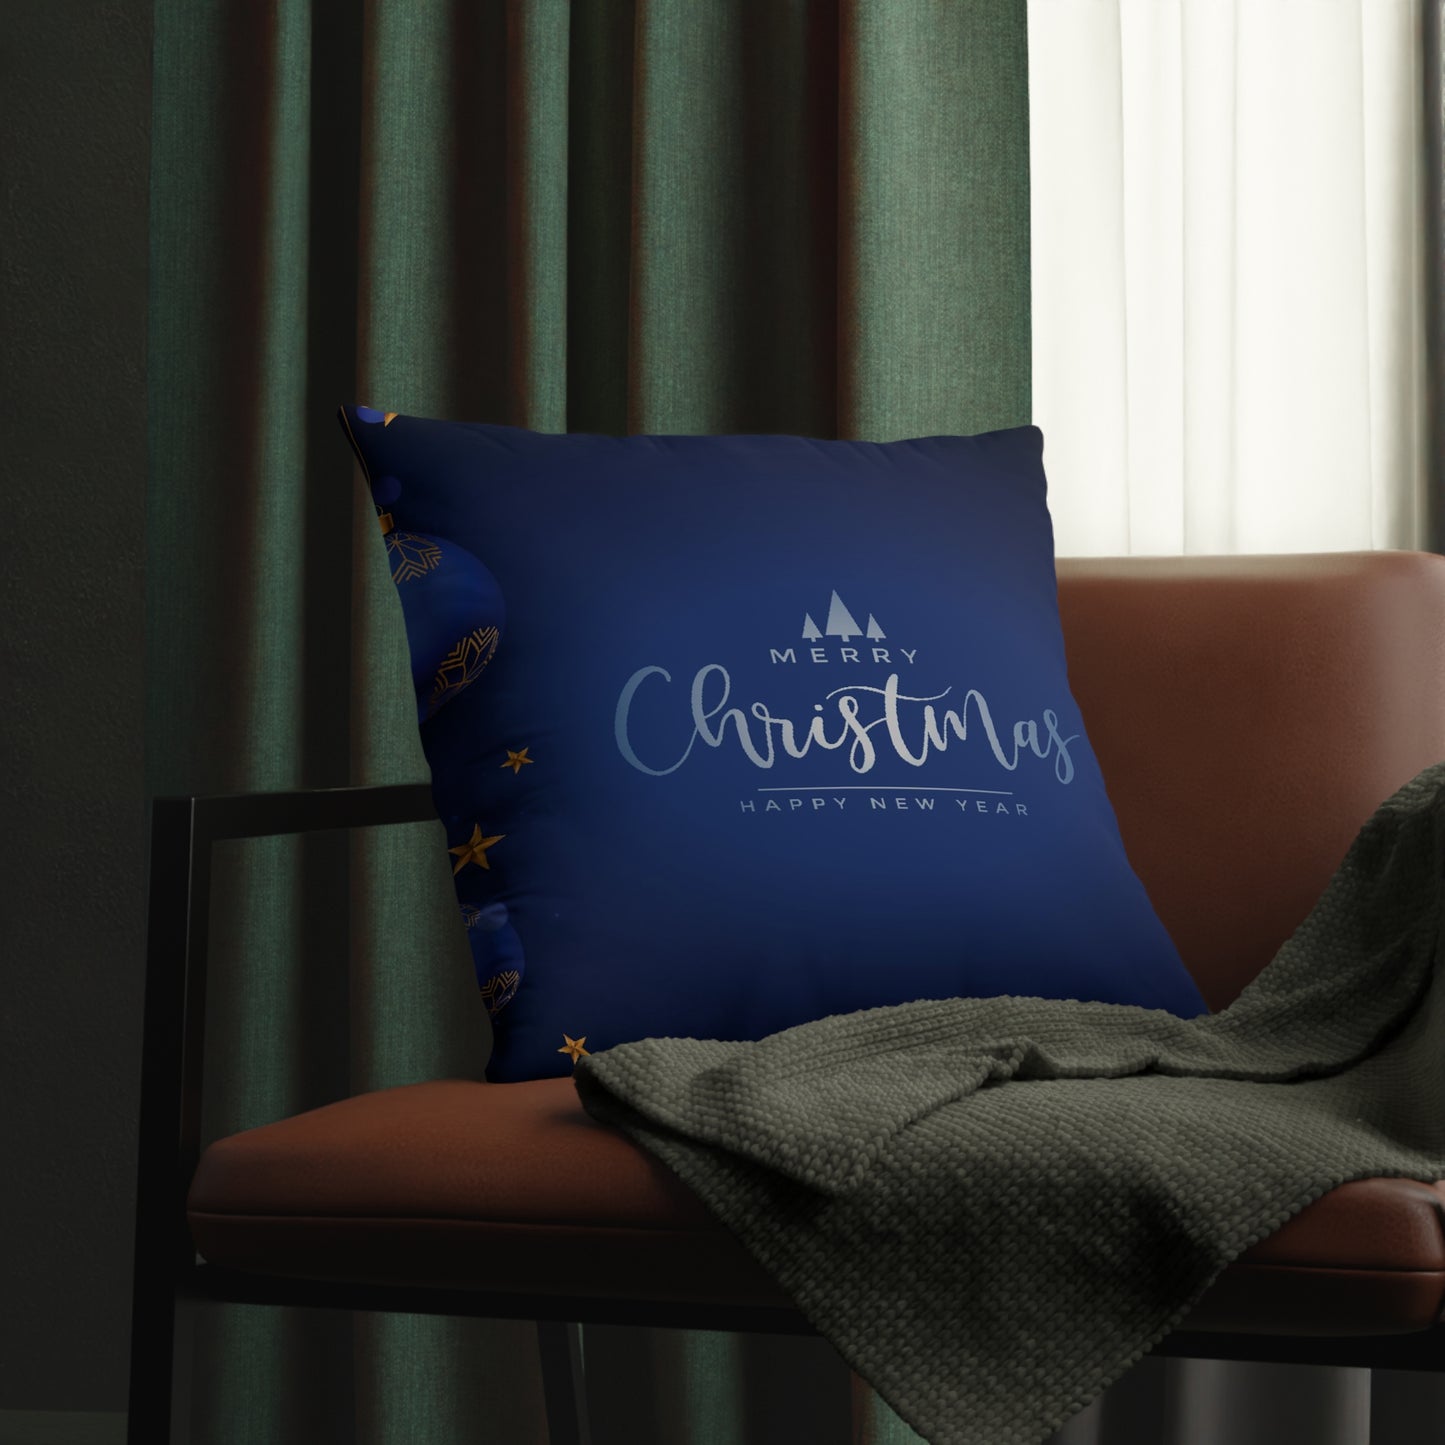 Dark Blue Christmas Waterproof Pillows